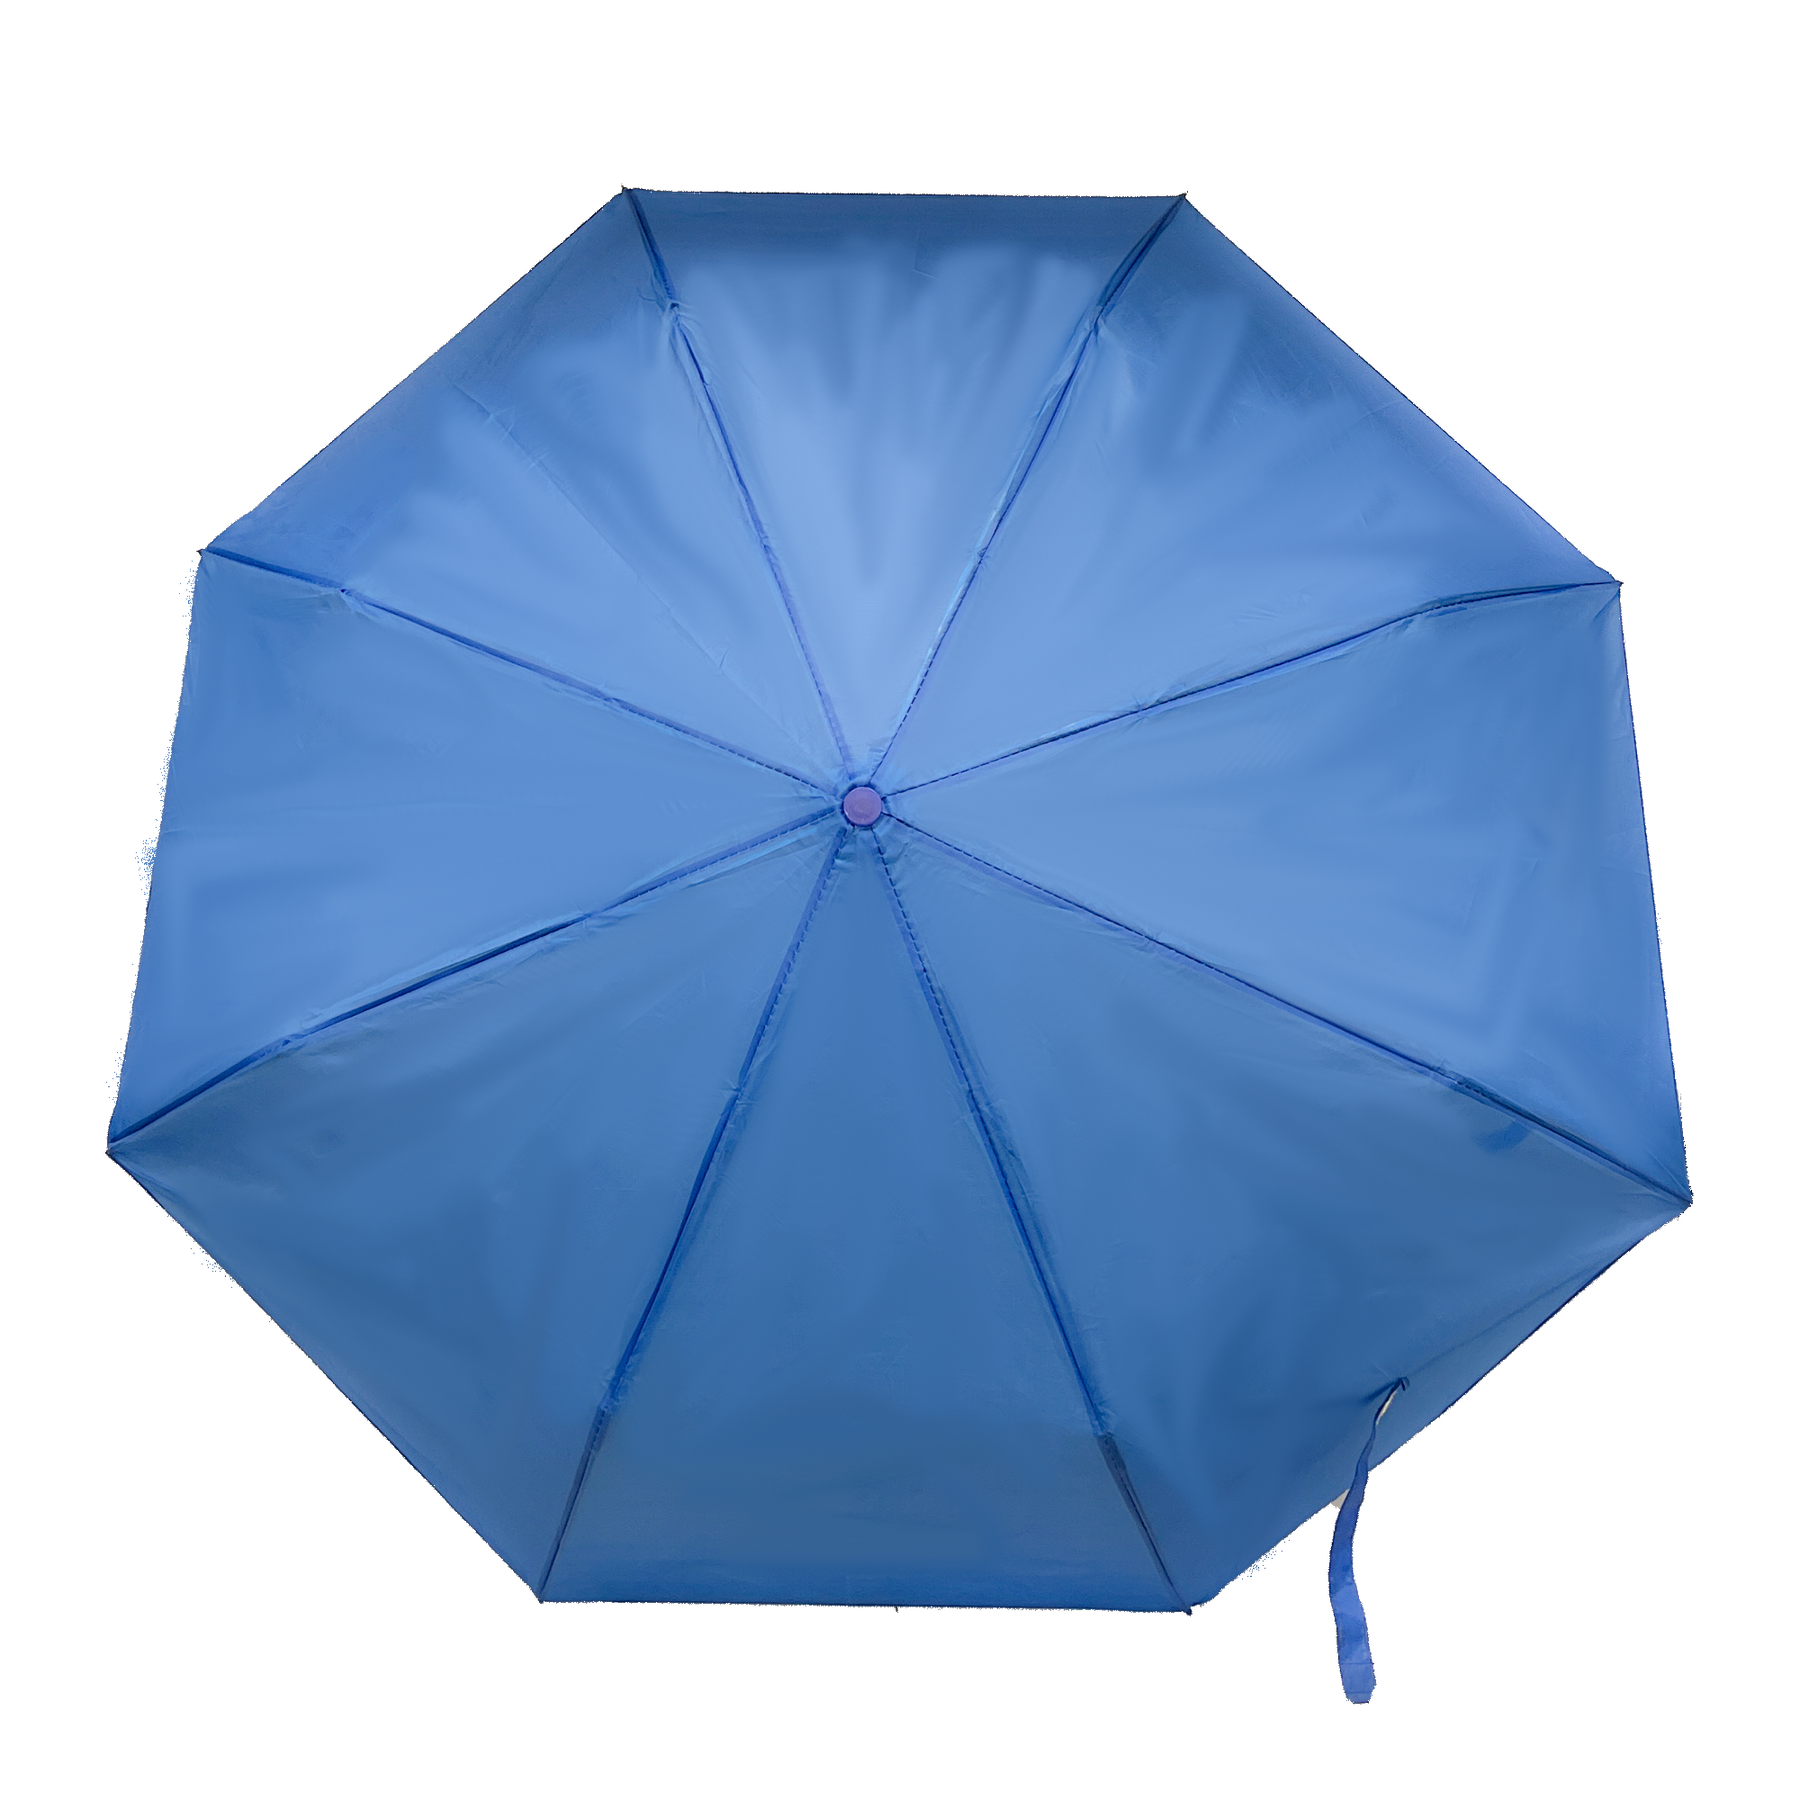 Ultra-legendárny cestovný dáždnik s ergonomickým rukávom a remienkom na zápästie